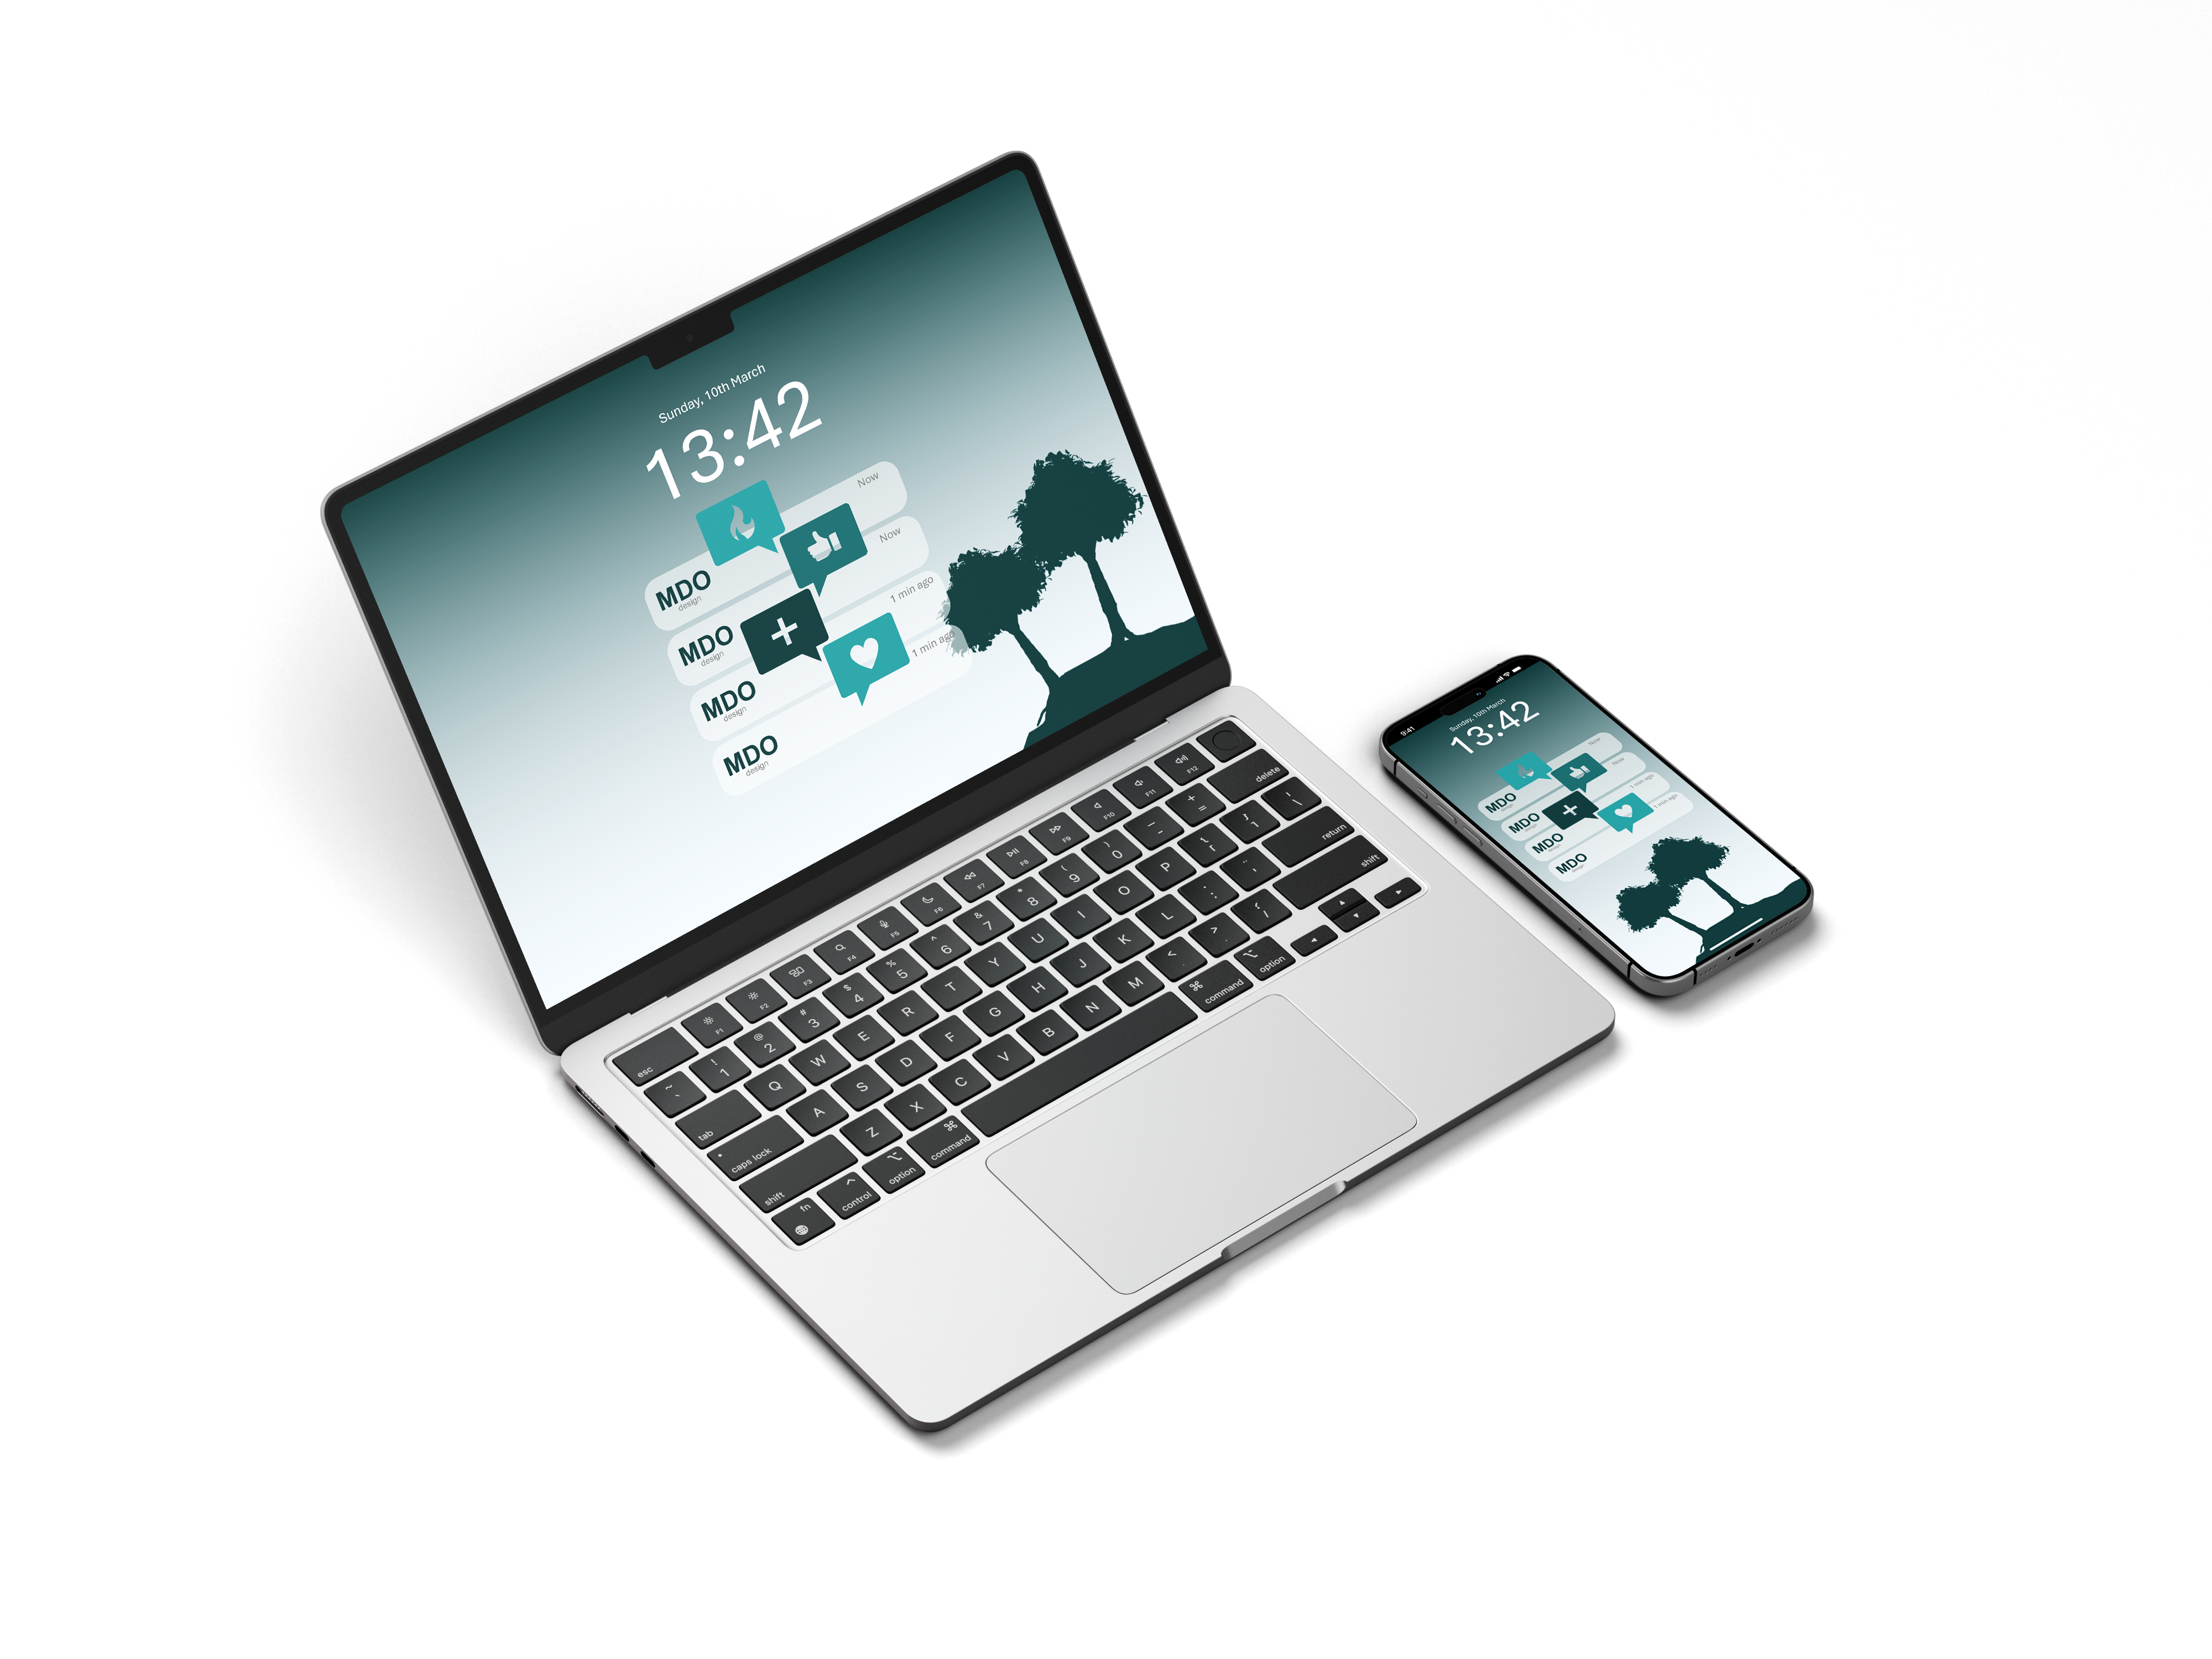 MDO design Laptop und Smartphone mit Push-Mitteilungen, die steigende Onlinepräsenz repräsentieren